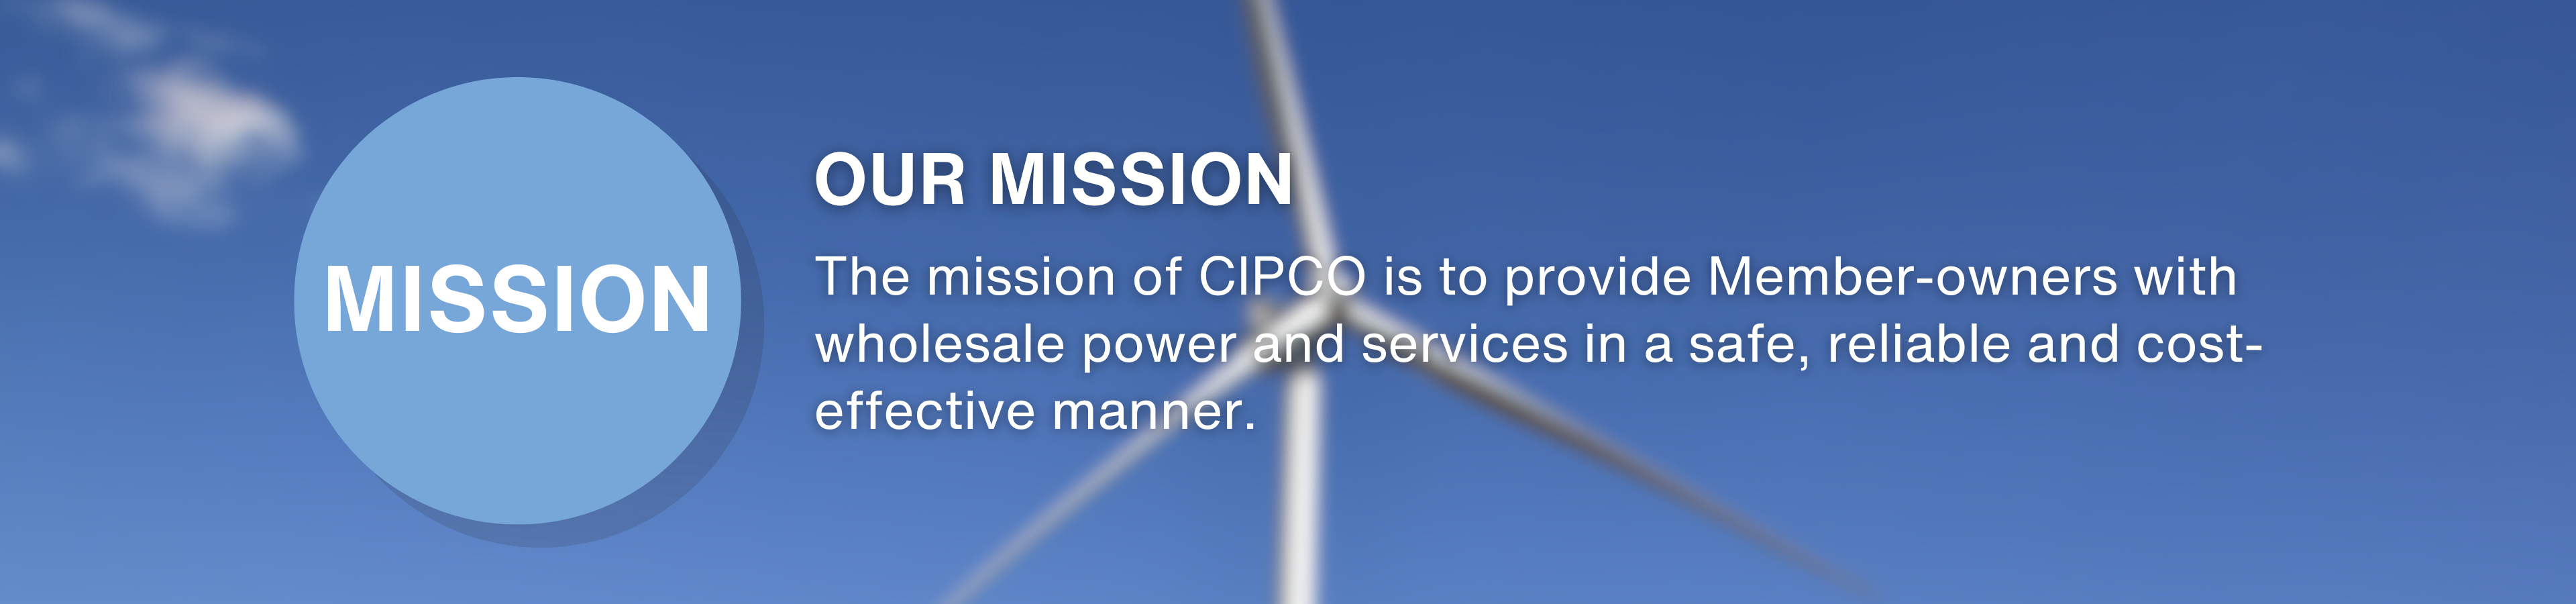 CIPCO Mission Statement